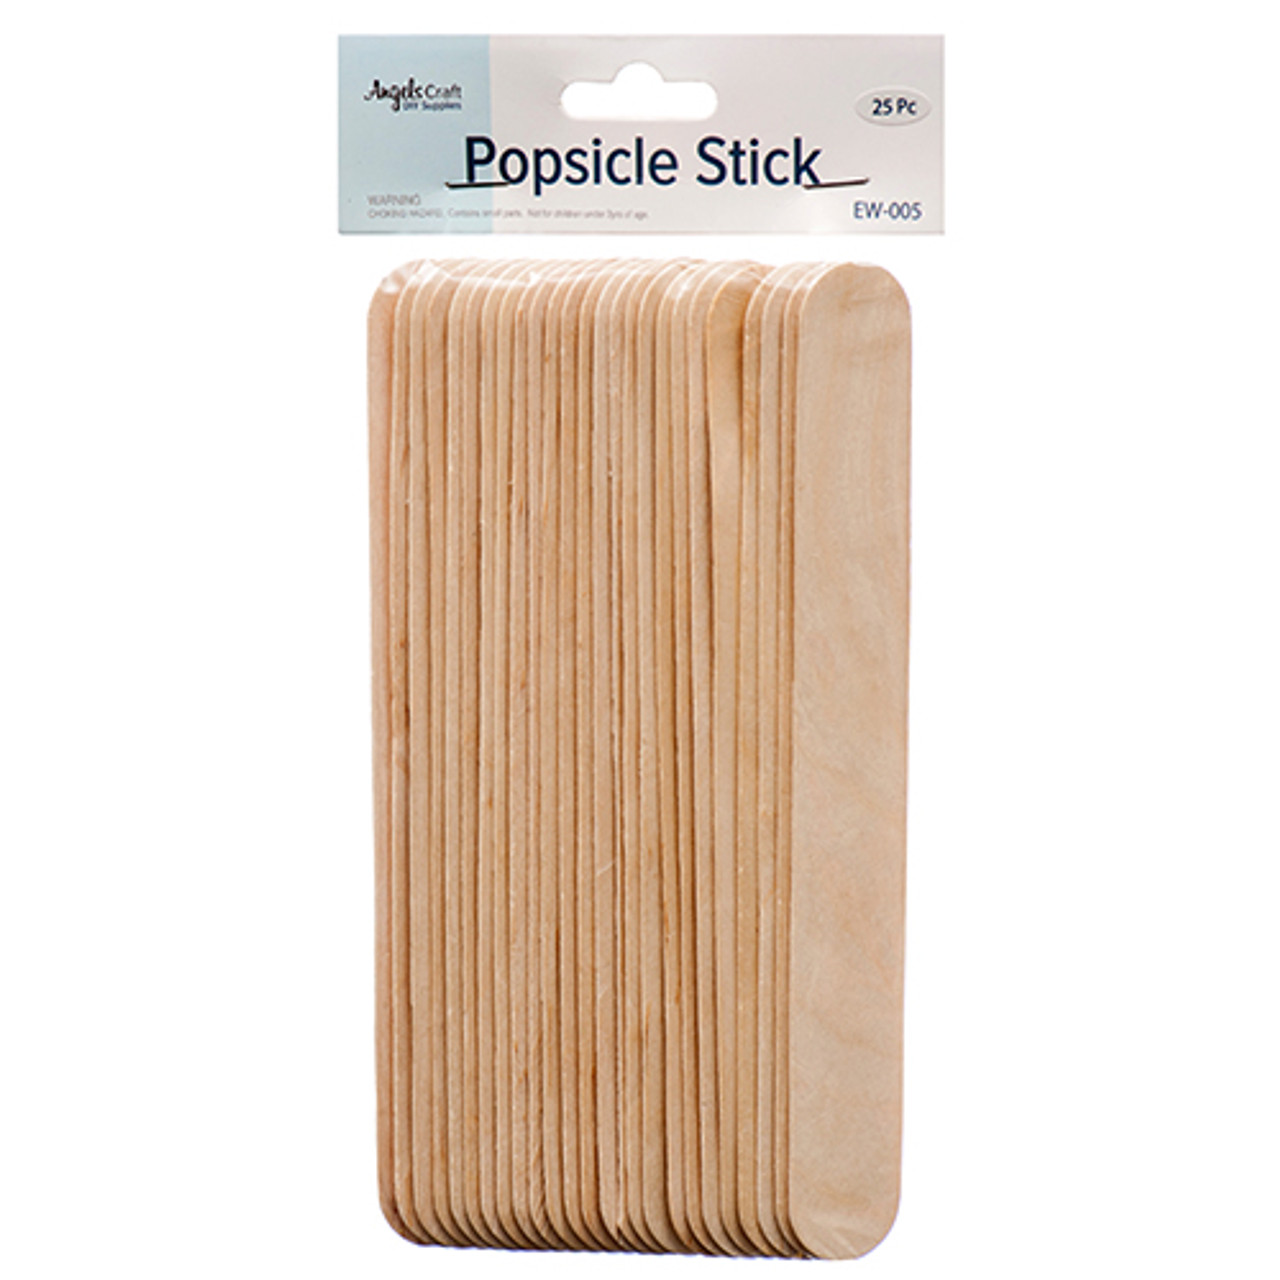 Extra Jumbo Natural Popsicle Sticks 25pk.